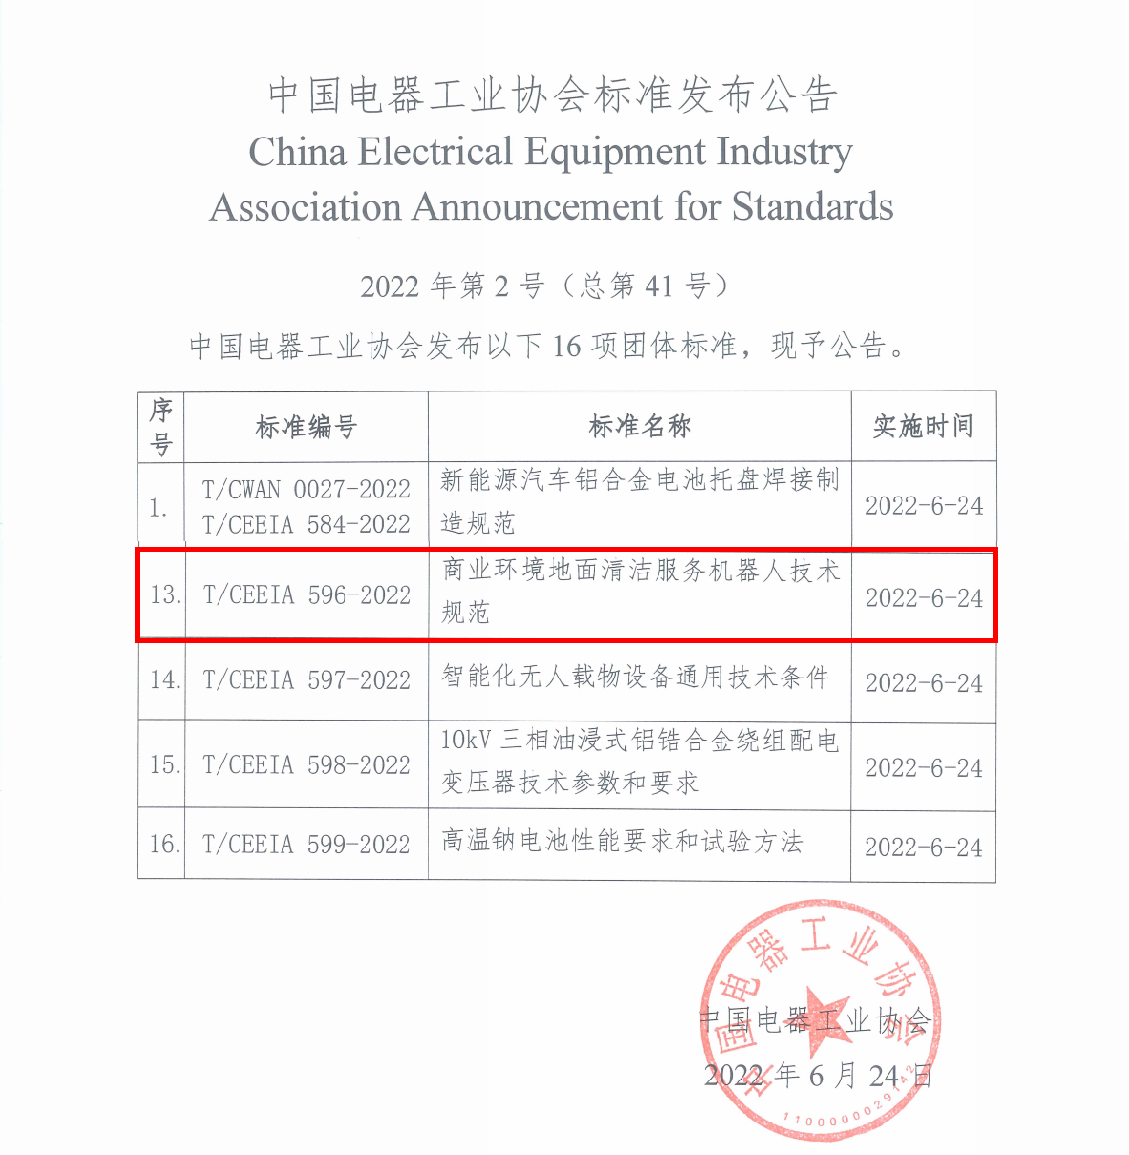 高仙主导丨中国电器工业协会发布首个商用清洁服务机器人团体标准